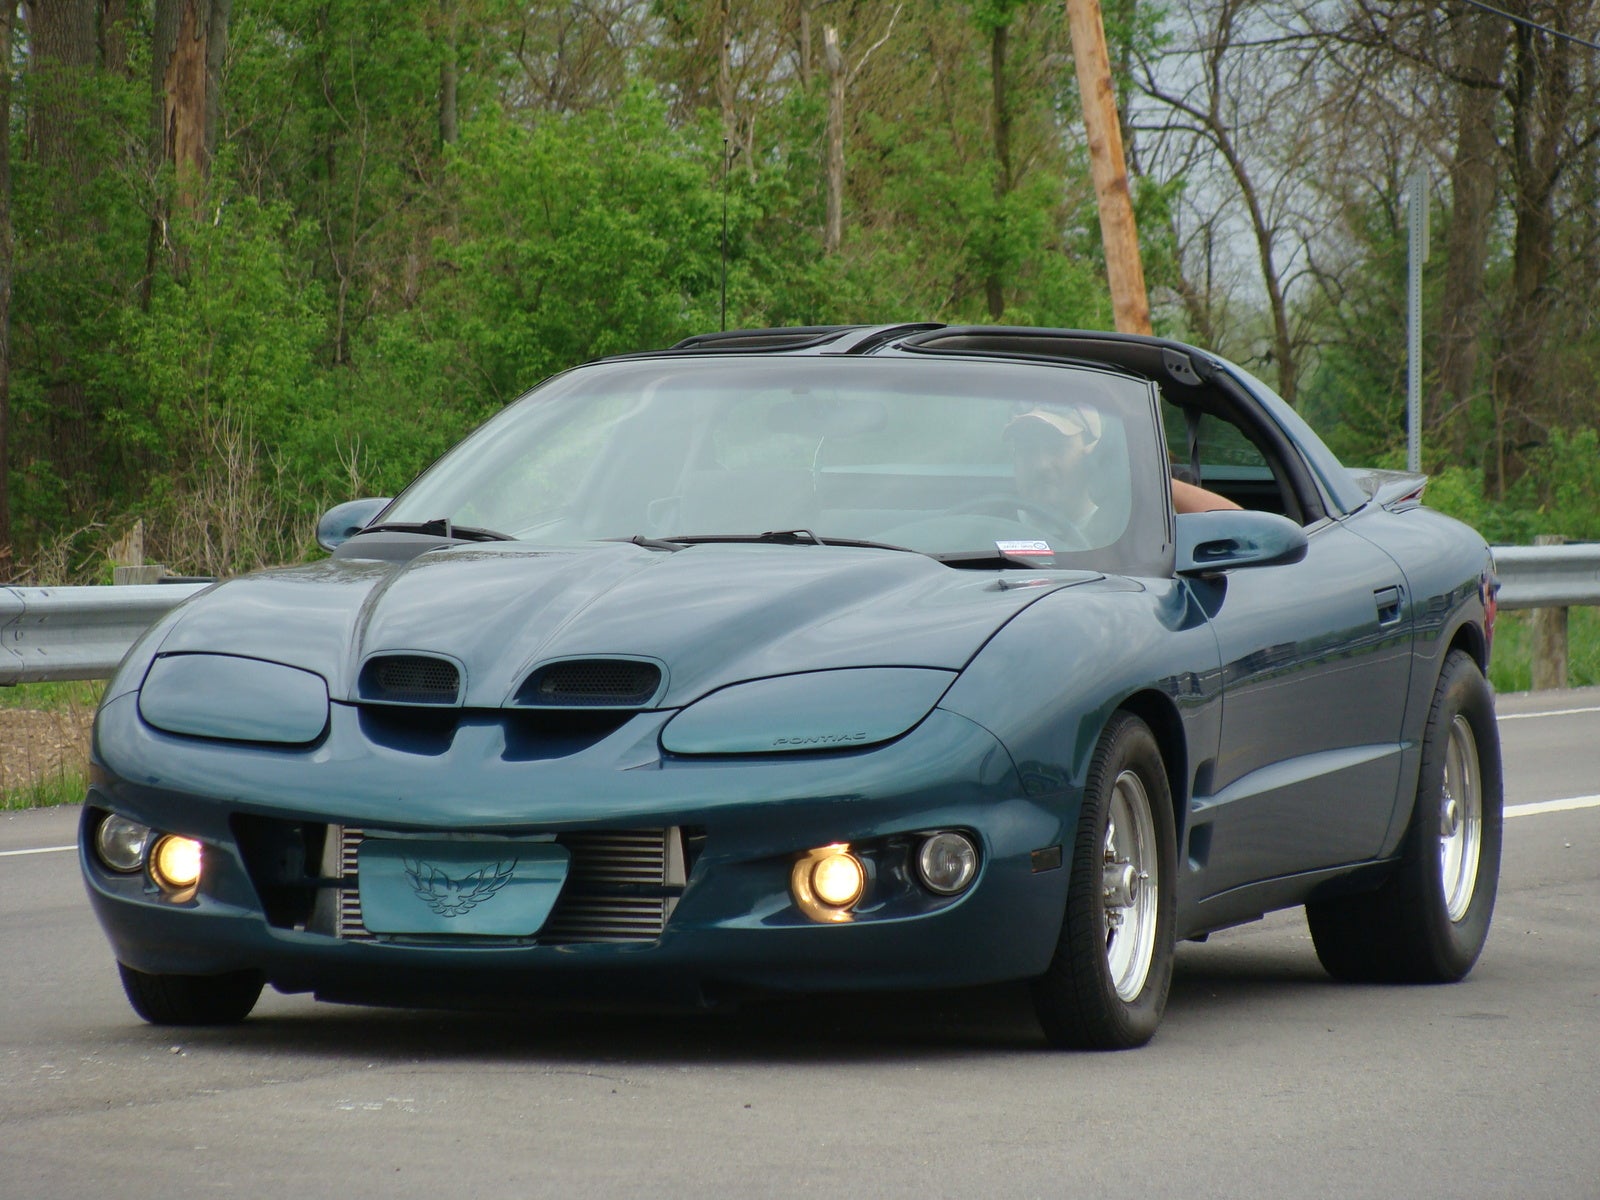 1998 Pontiac Firebird - AutoTrader.com